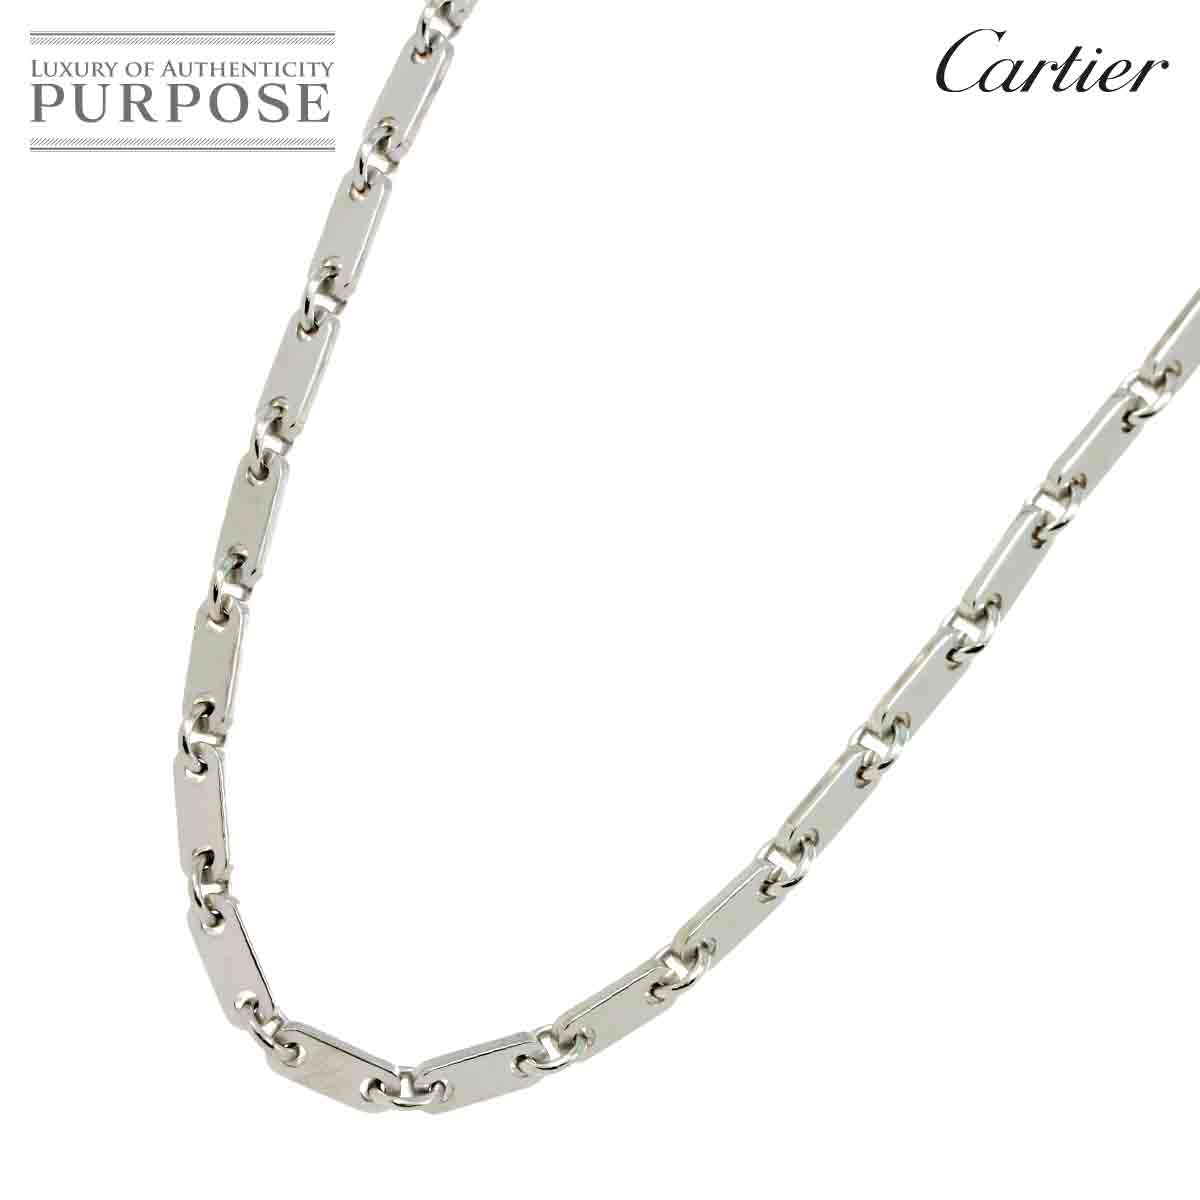 【新品同様】 カルティエ Cartier フィガロ ネックレス 45cm K18 WG ホワイトゴールド 750 Necklace 【証明書付き】【中古】